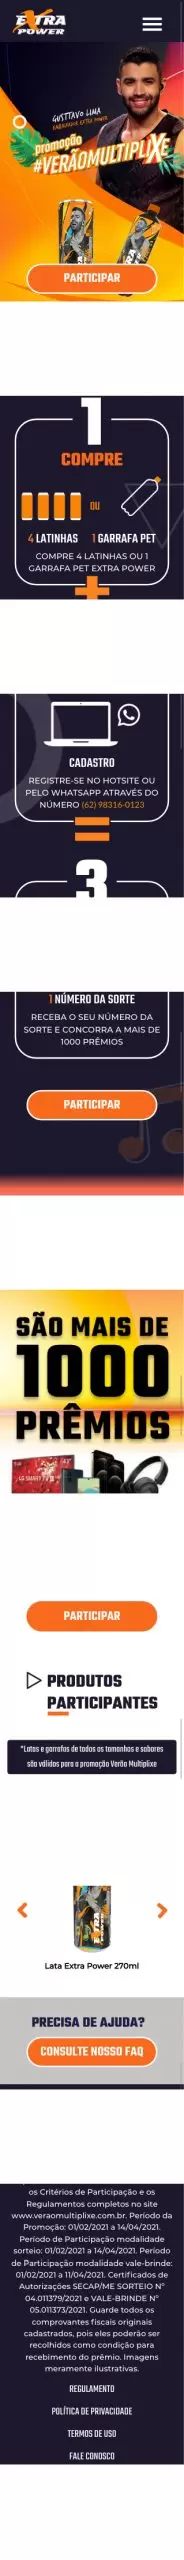 Extra Power lança promoção com mais de 1000 prêmios - Mundo do